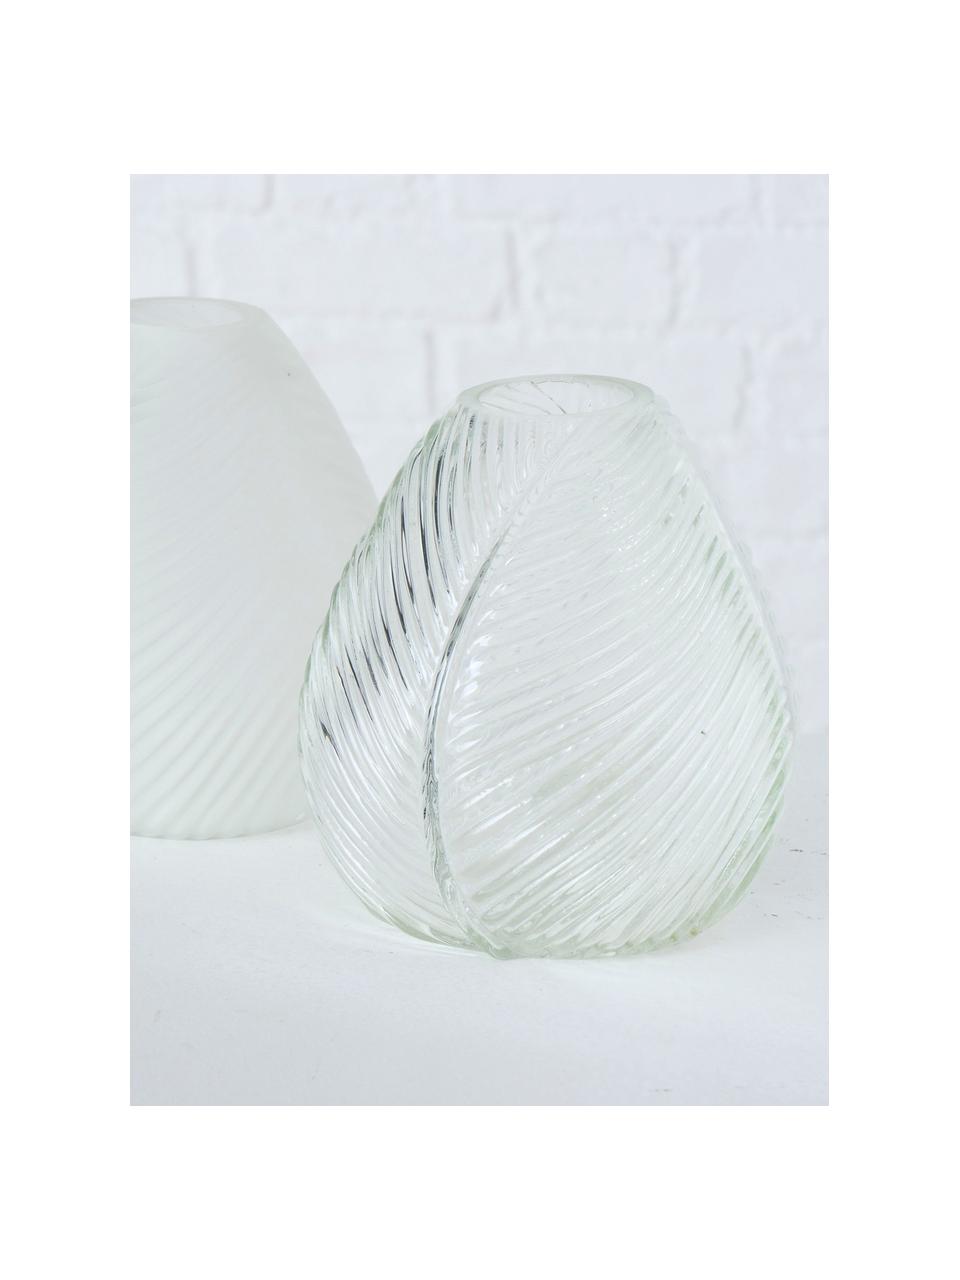 Glasvasen-Set Lewin, 2-tlg., Glas, Weiß, Transparent, Ø 14 x H 15 cm